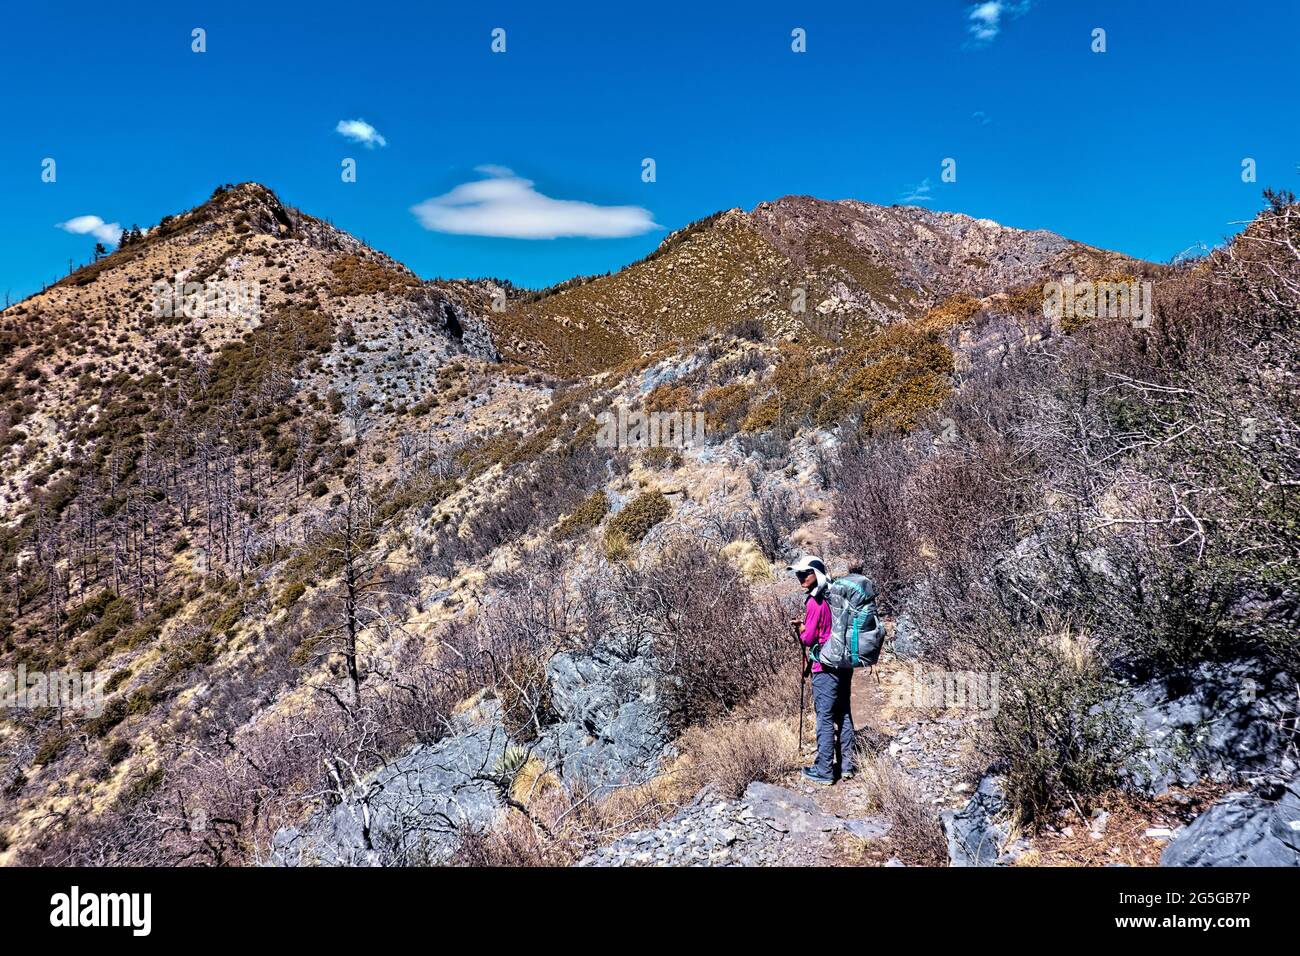 Hiking to Miller Peak, Arizona Trail, Arizona, U.S.A Stock Photo